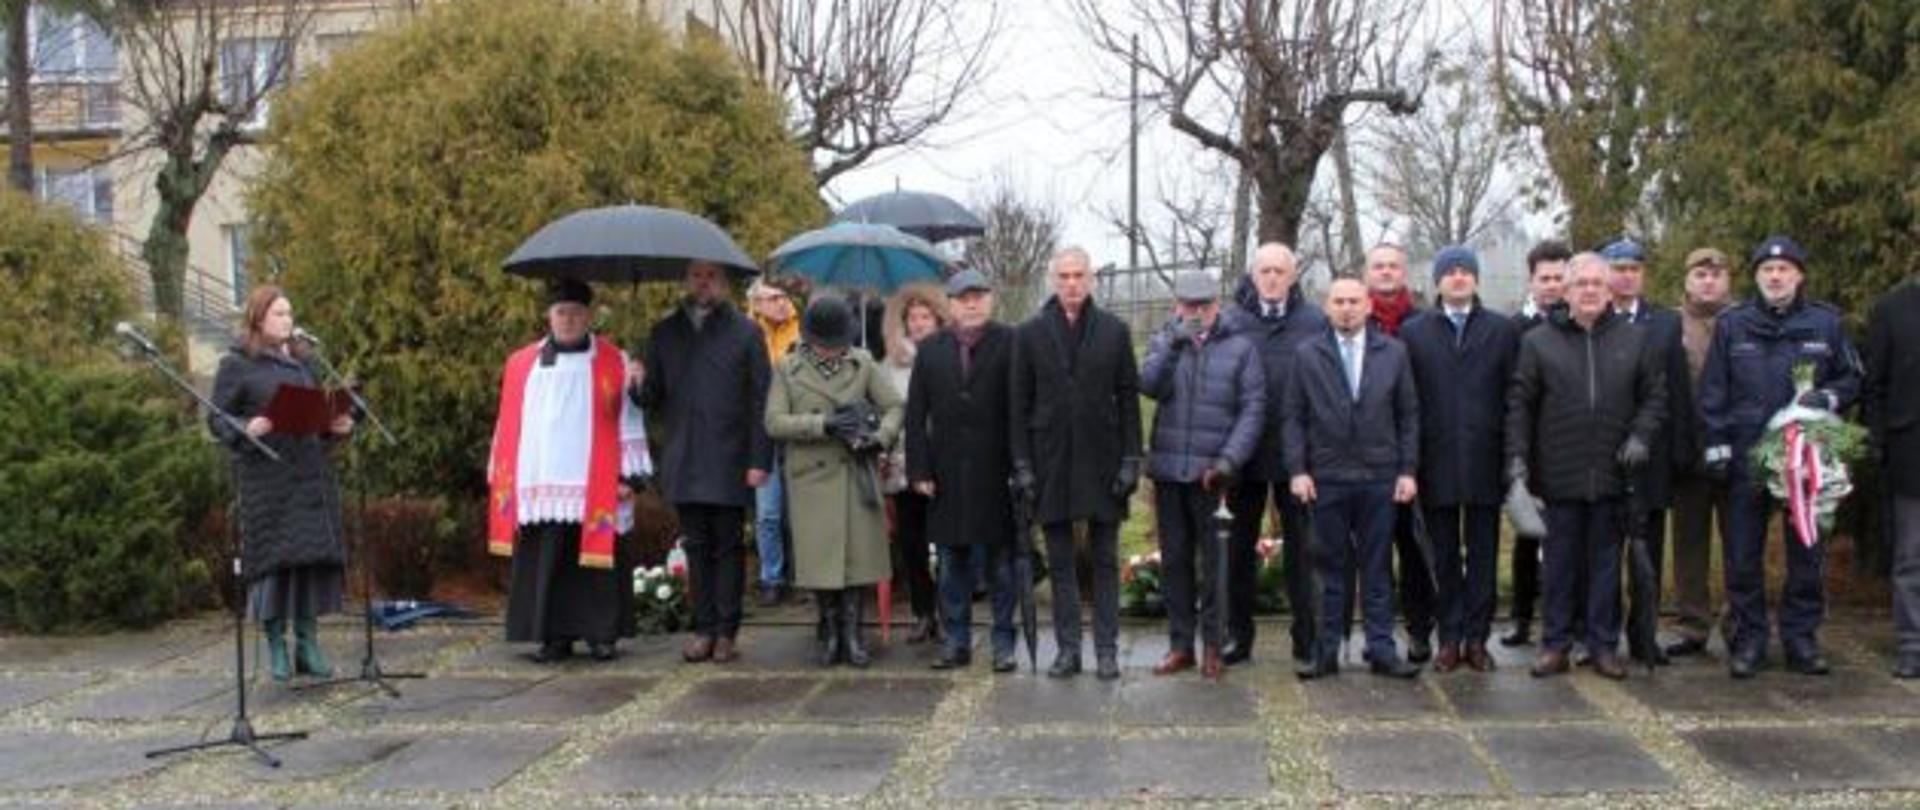 Uroczystości upamiętniające ofiary zbrodni na Kalkówce.